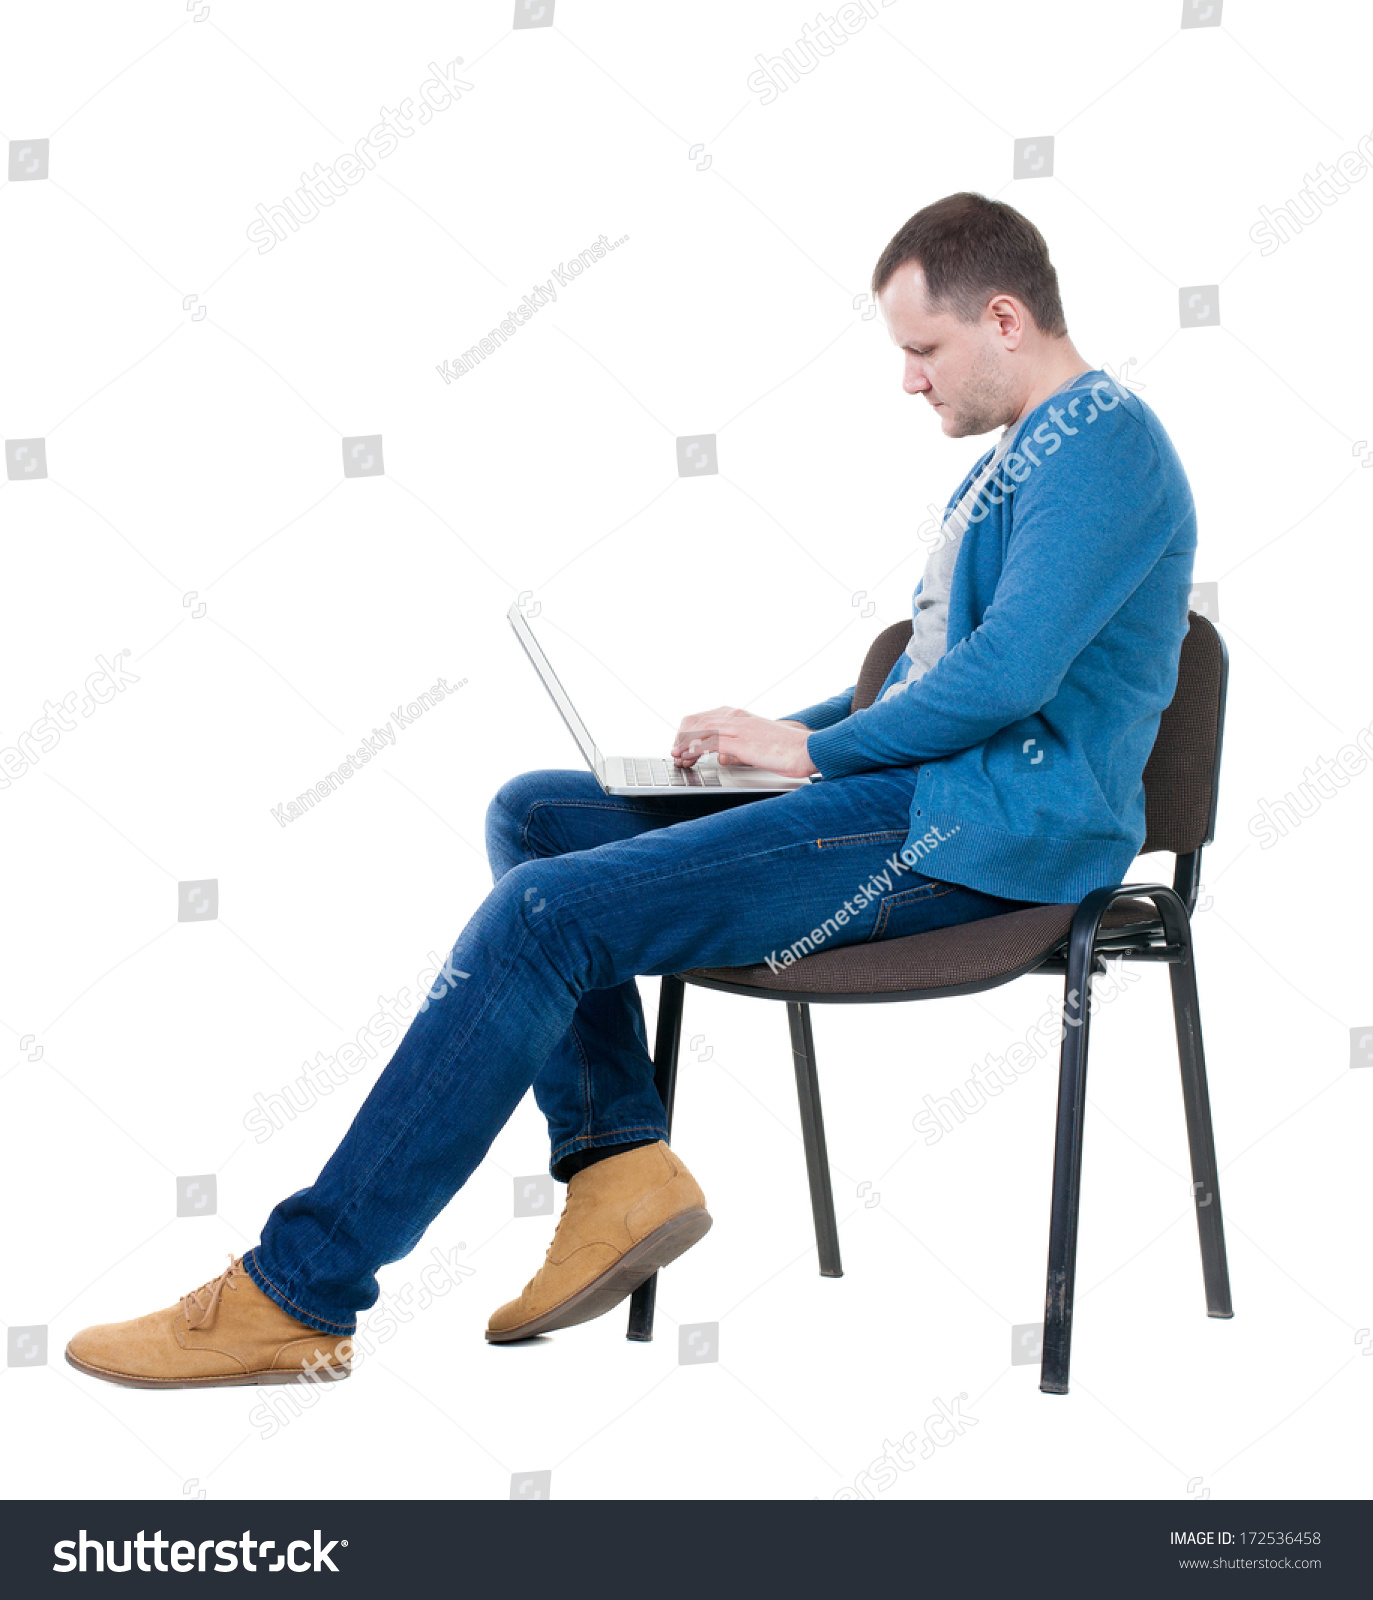 Сижу воспитываю. Мужчина сидит. Человек на стуле. Человек сидит на стуле. Человек сидит с боку.